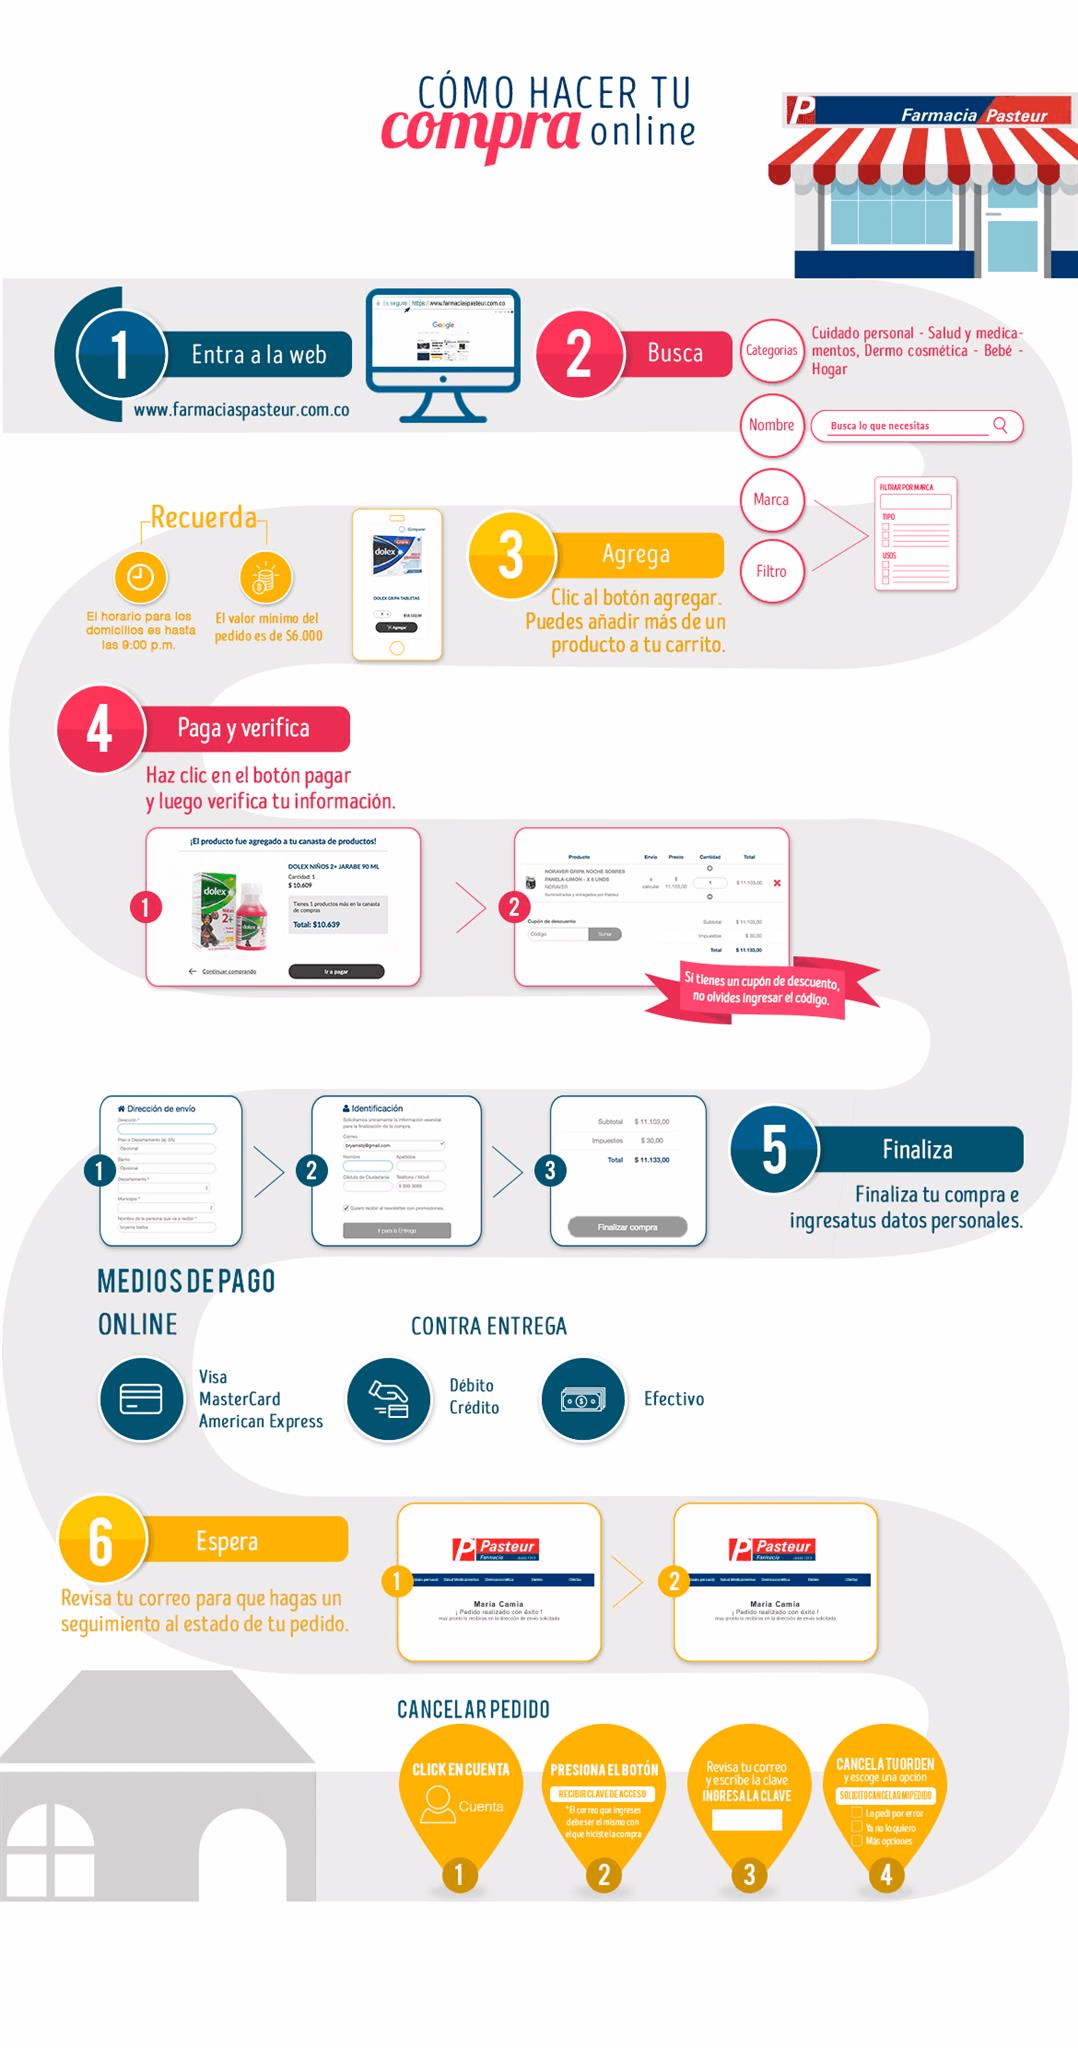 Infográfico del paso a paso para comprar en la tienda online Farmacias Pasteur